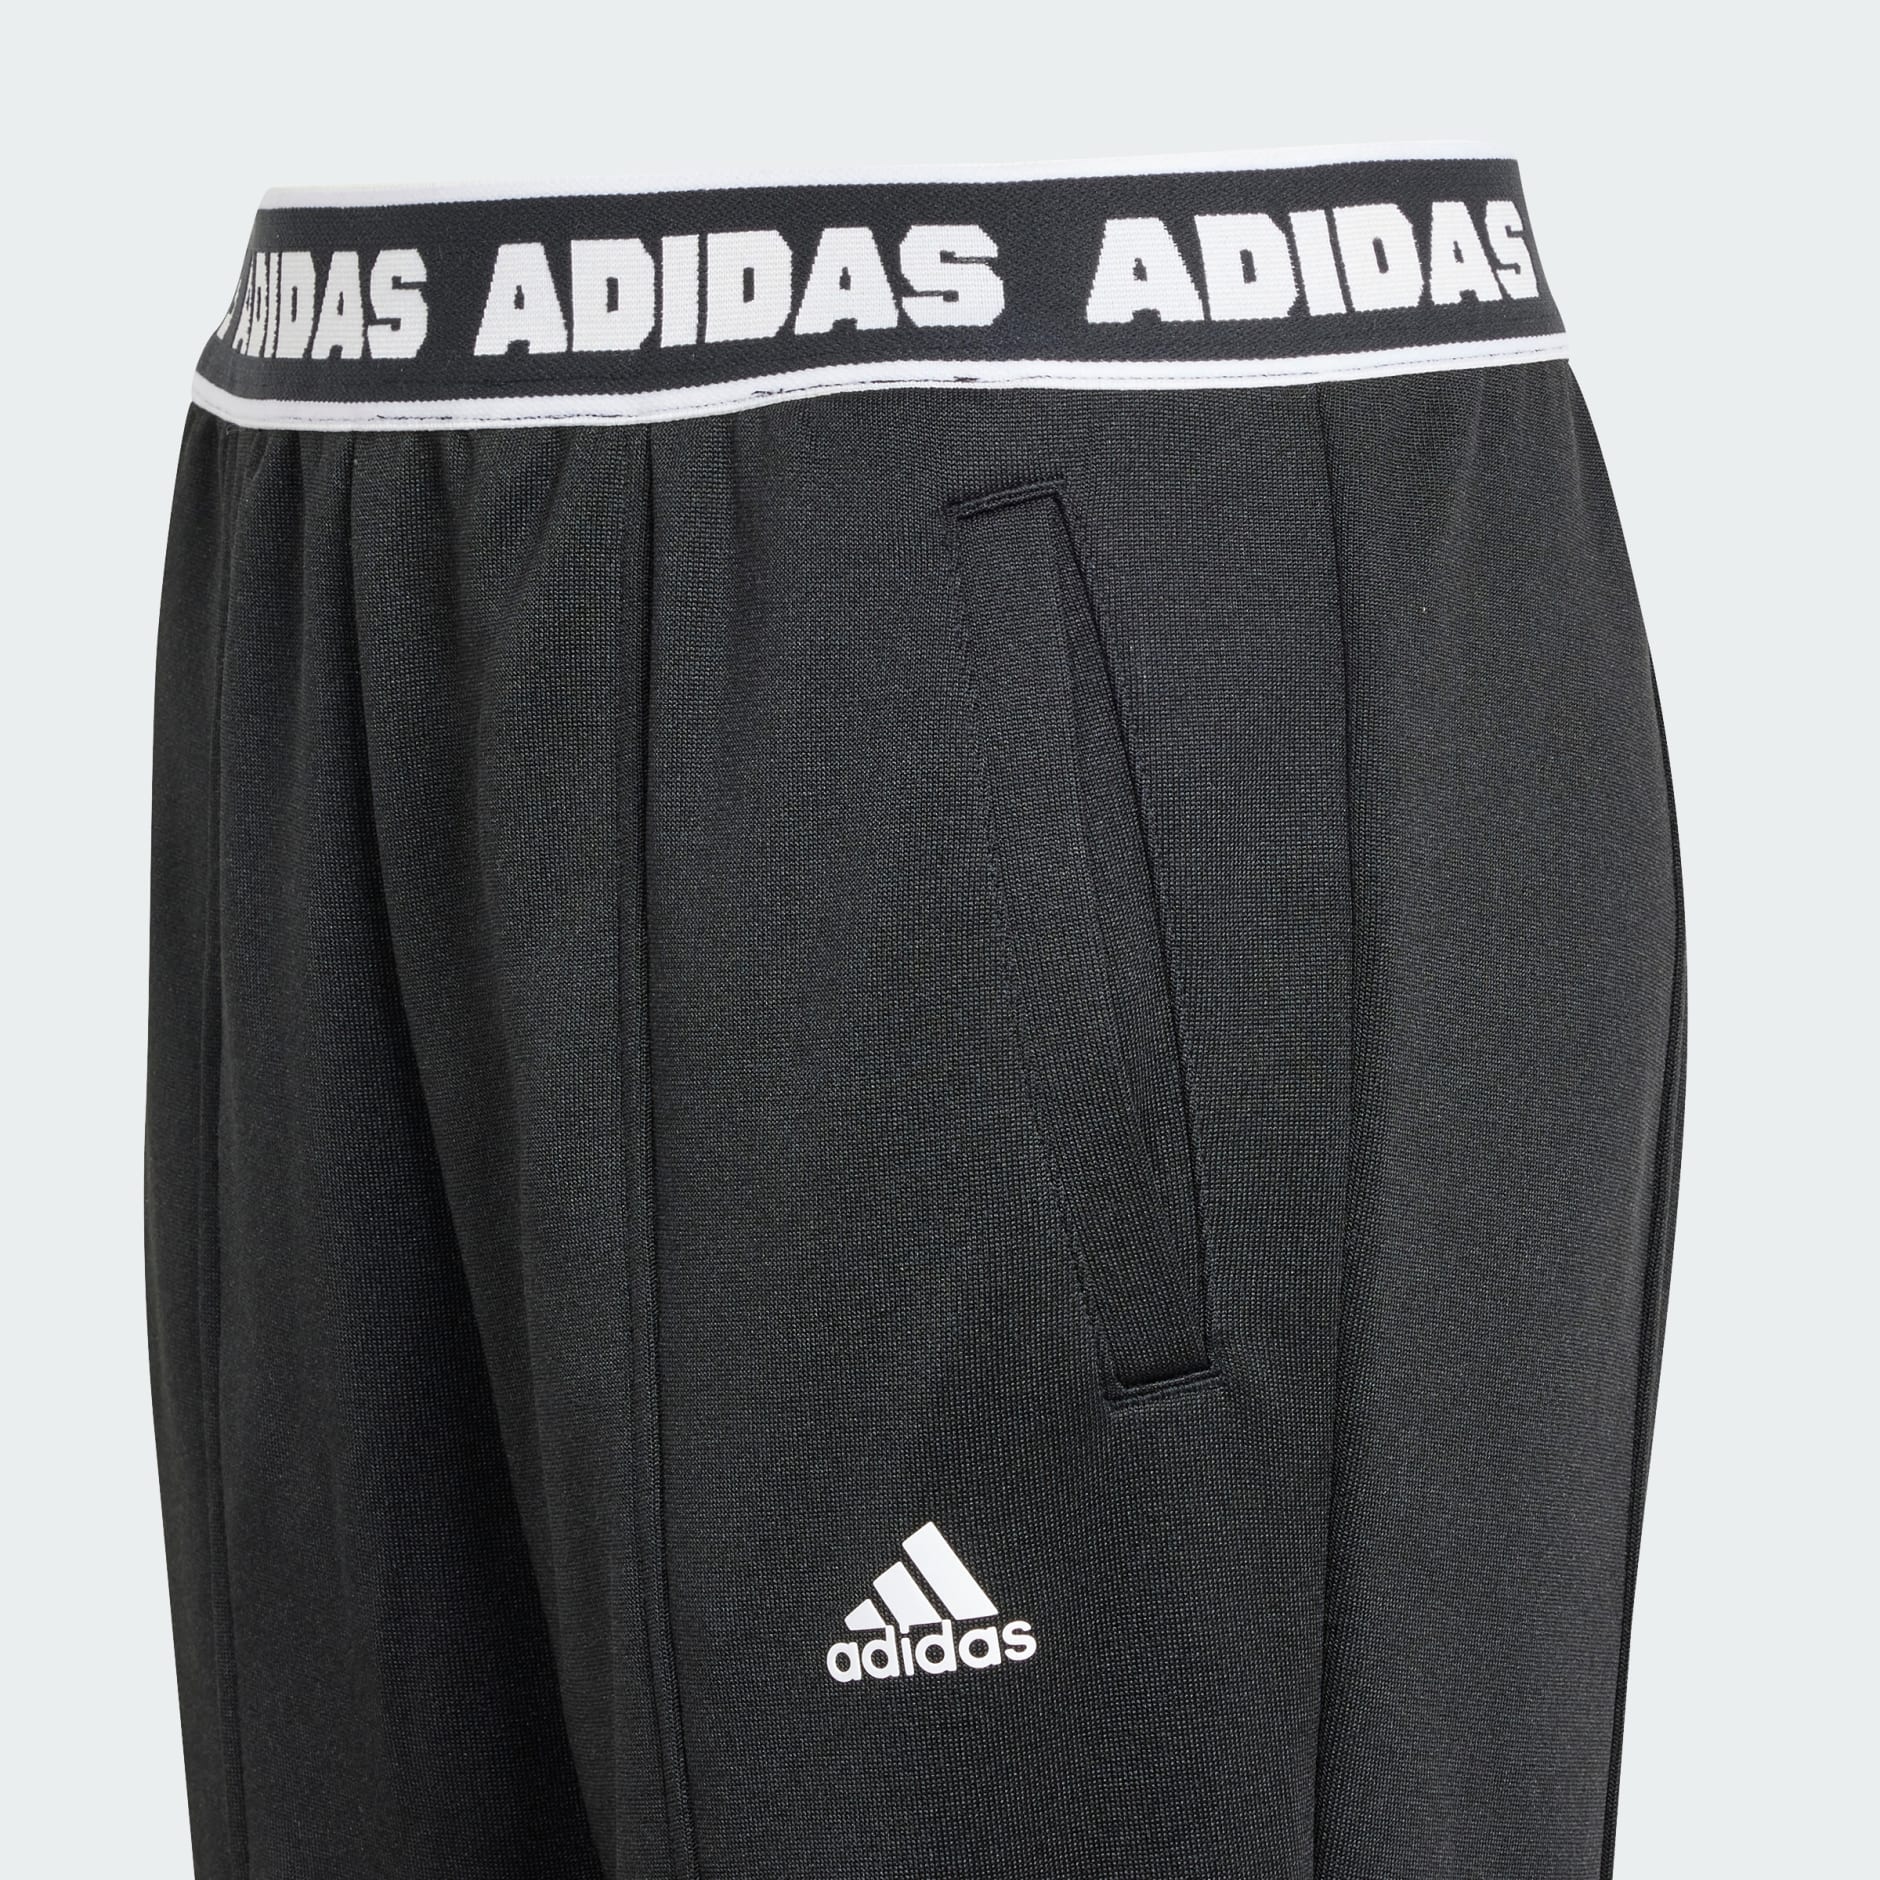 Boys adidas track pants | Adidas track pants, Pants, Track pants